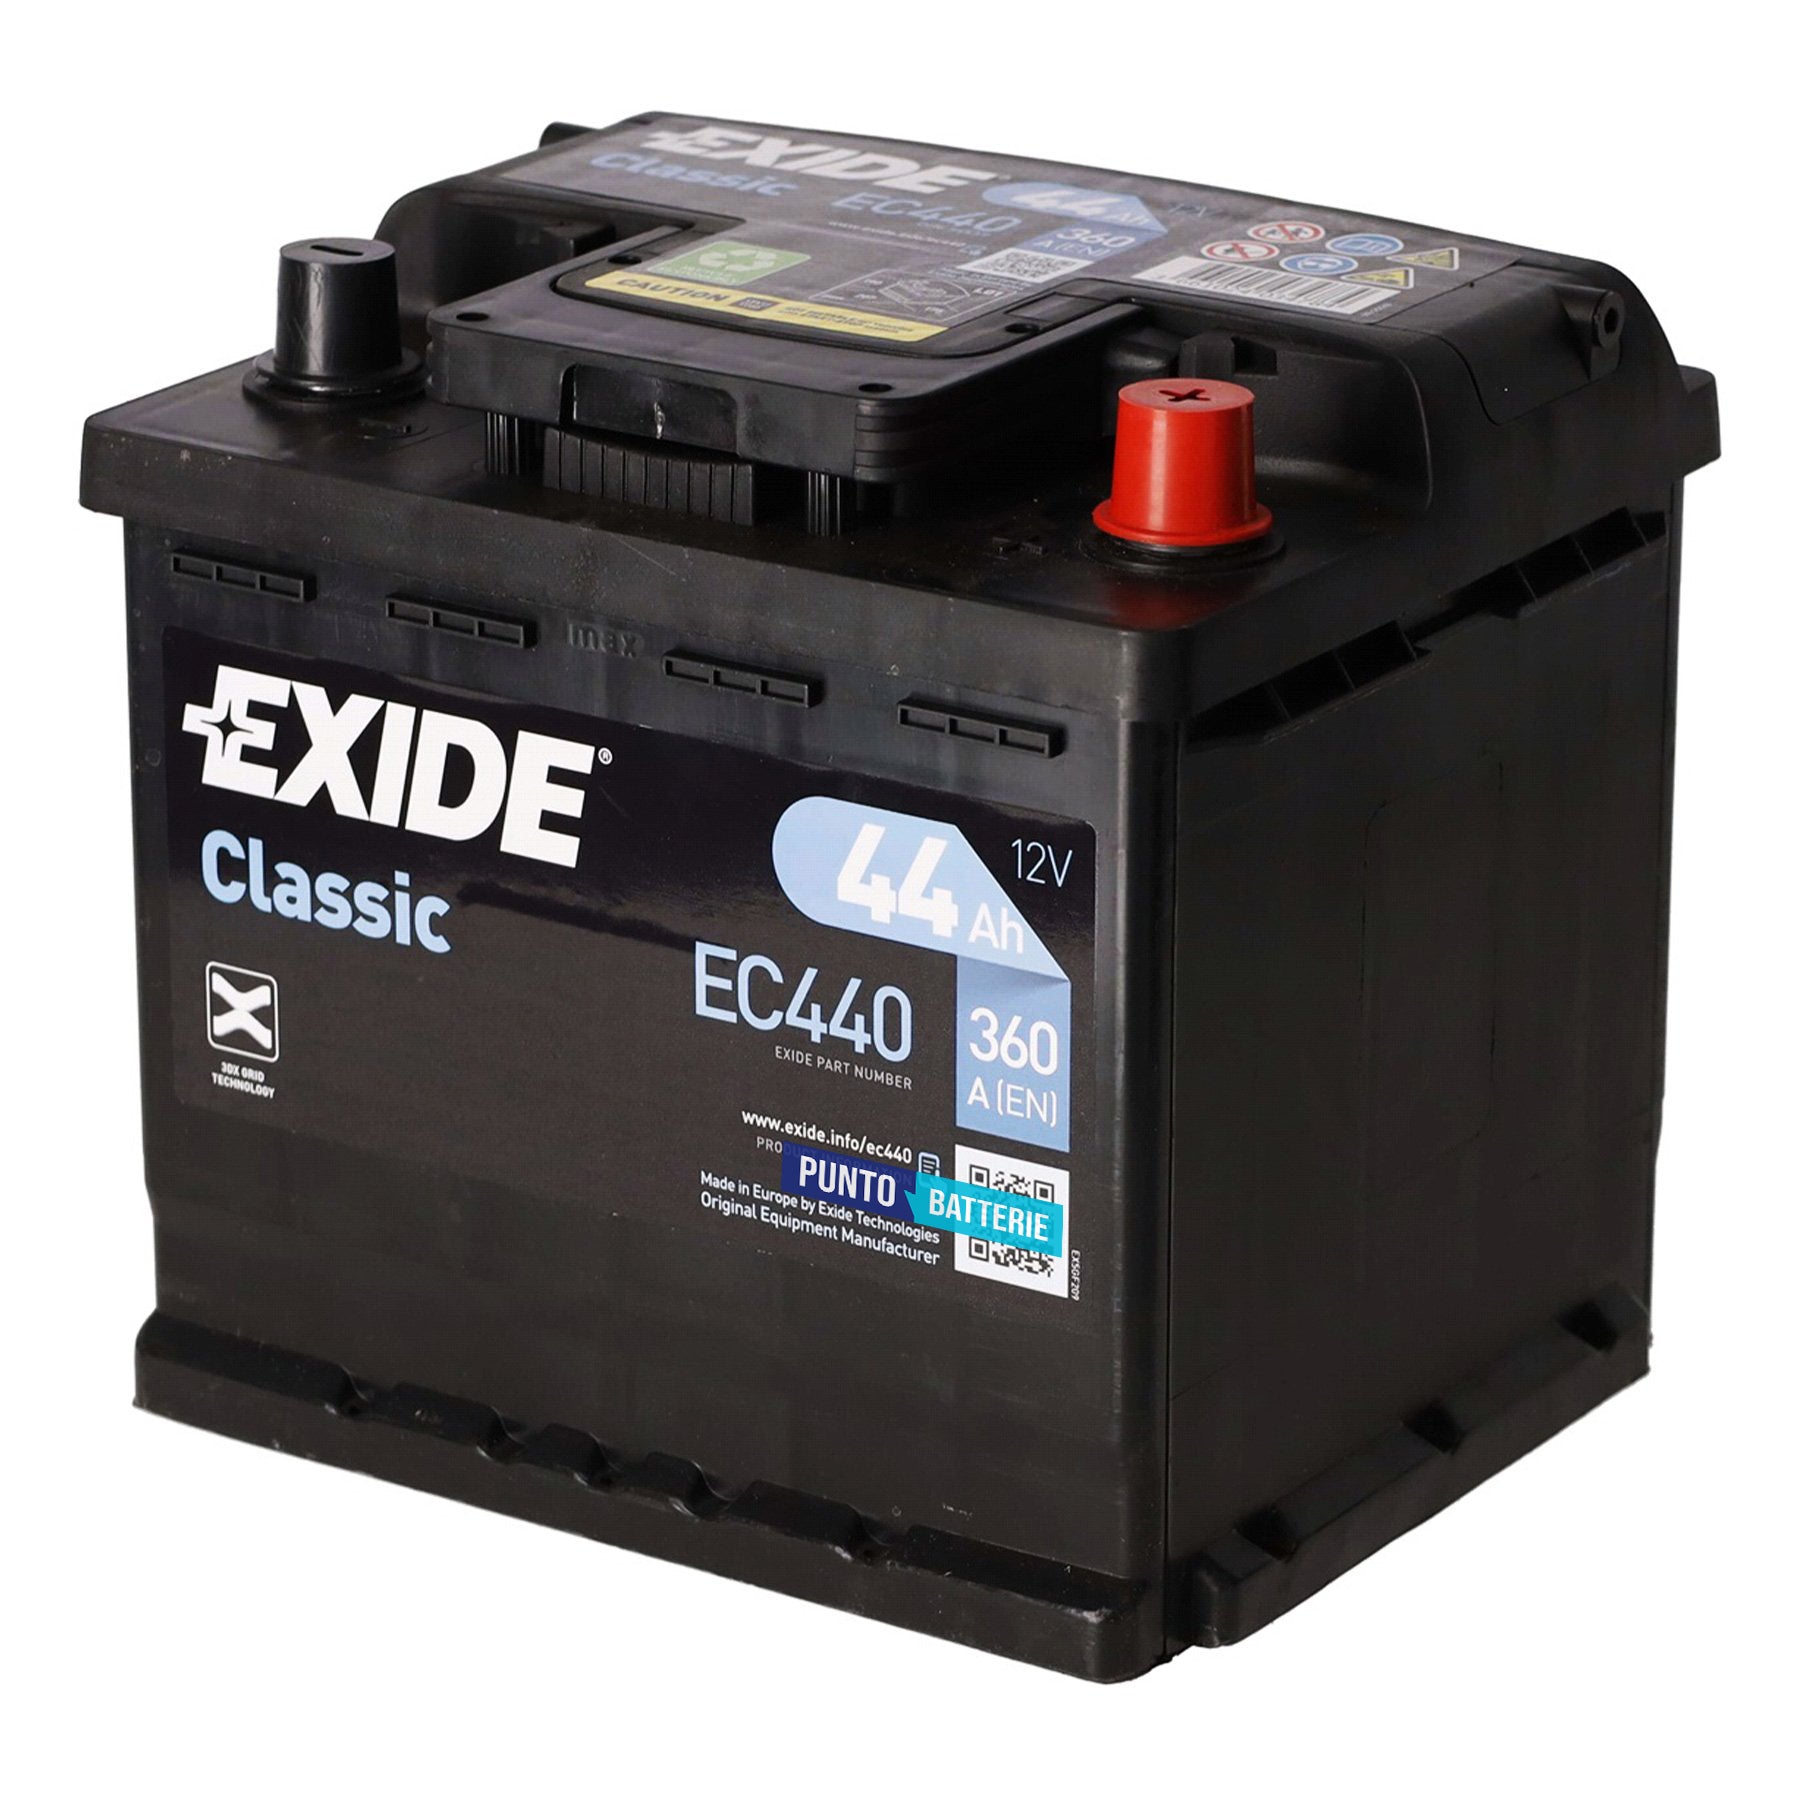 Batteria originale Exide Classic EC440, dimensioni 207 x 175 x 190, polo positivo a destra, 12 volt, 44 amperora, 360 ampere. Batteria per auto e veicoli leggeri.